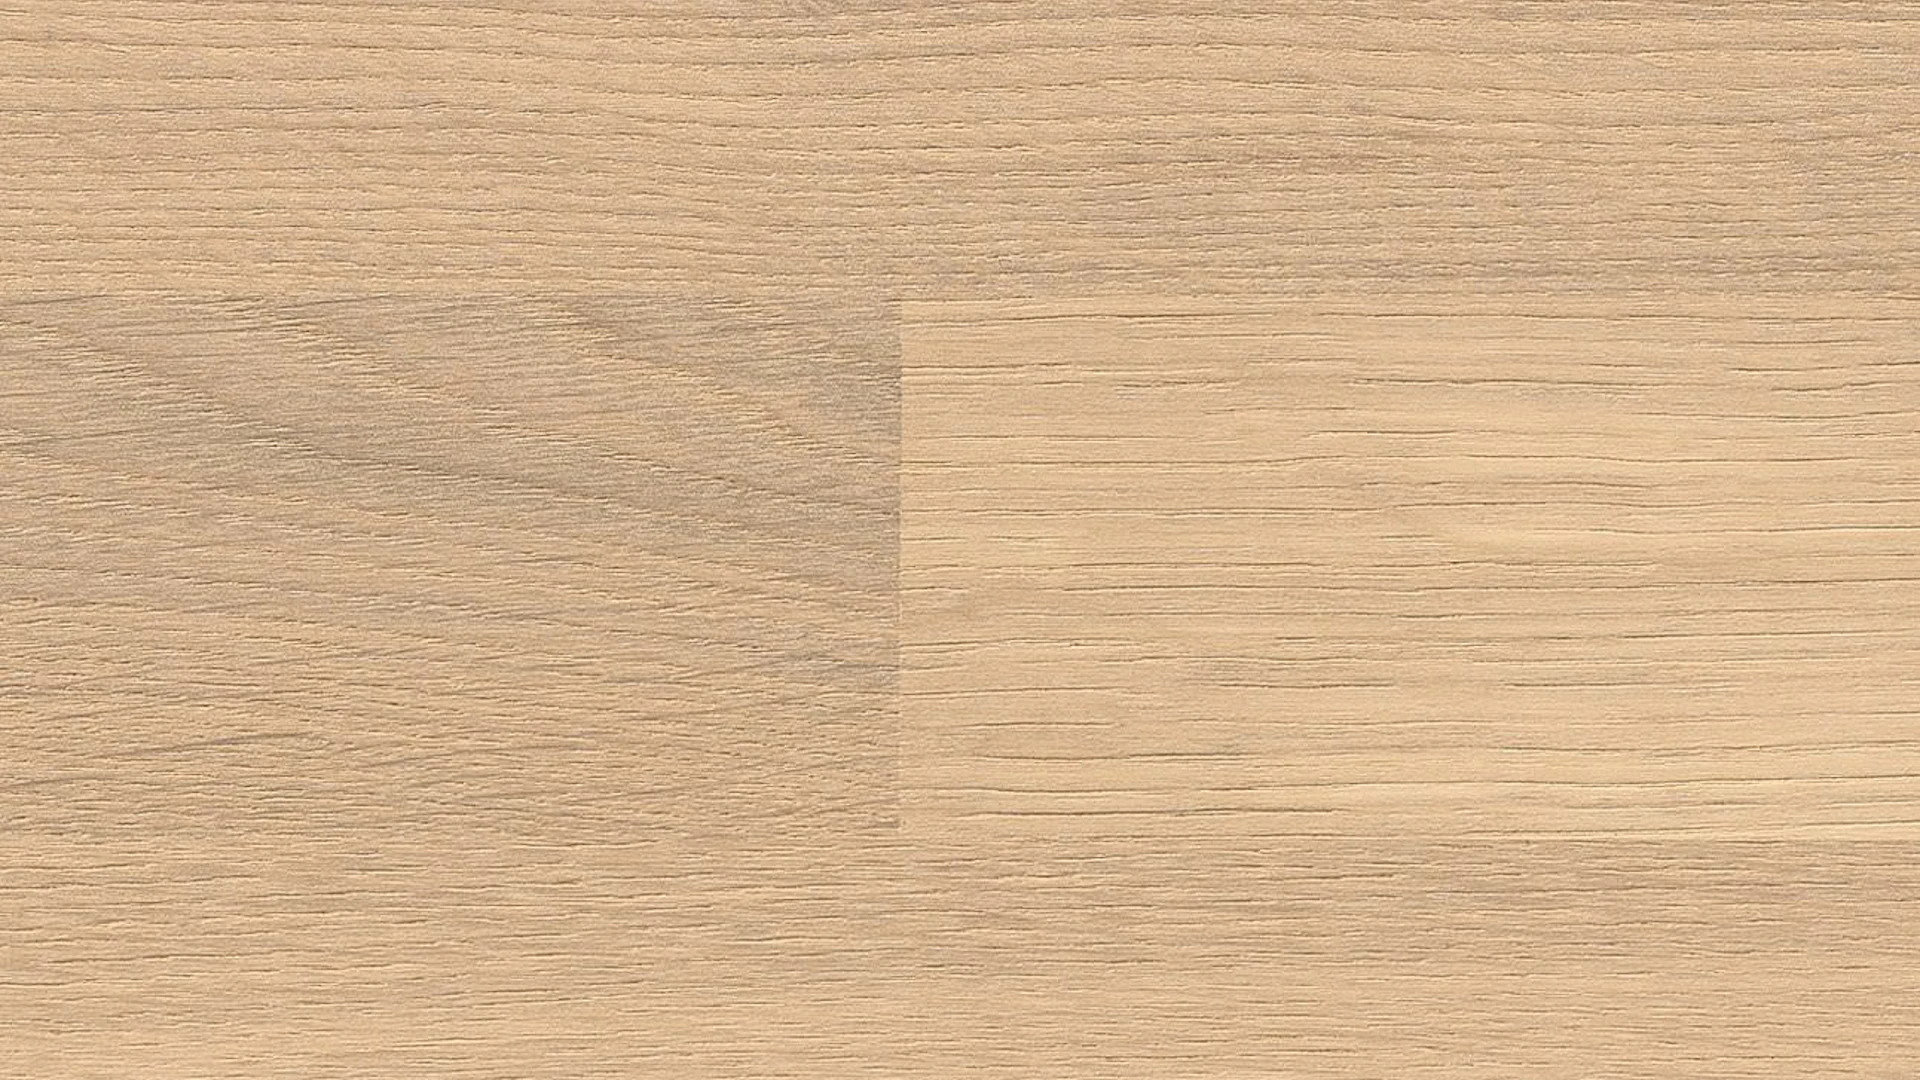 Haro Parquet Flooring - Series 4000 Puro naturaLin plus White Oak Trend (533343)